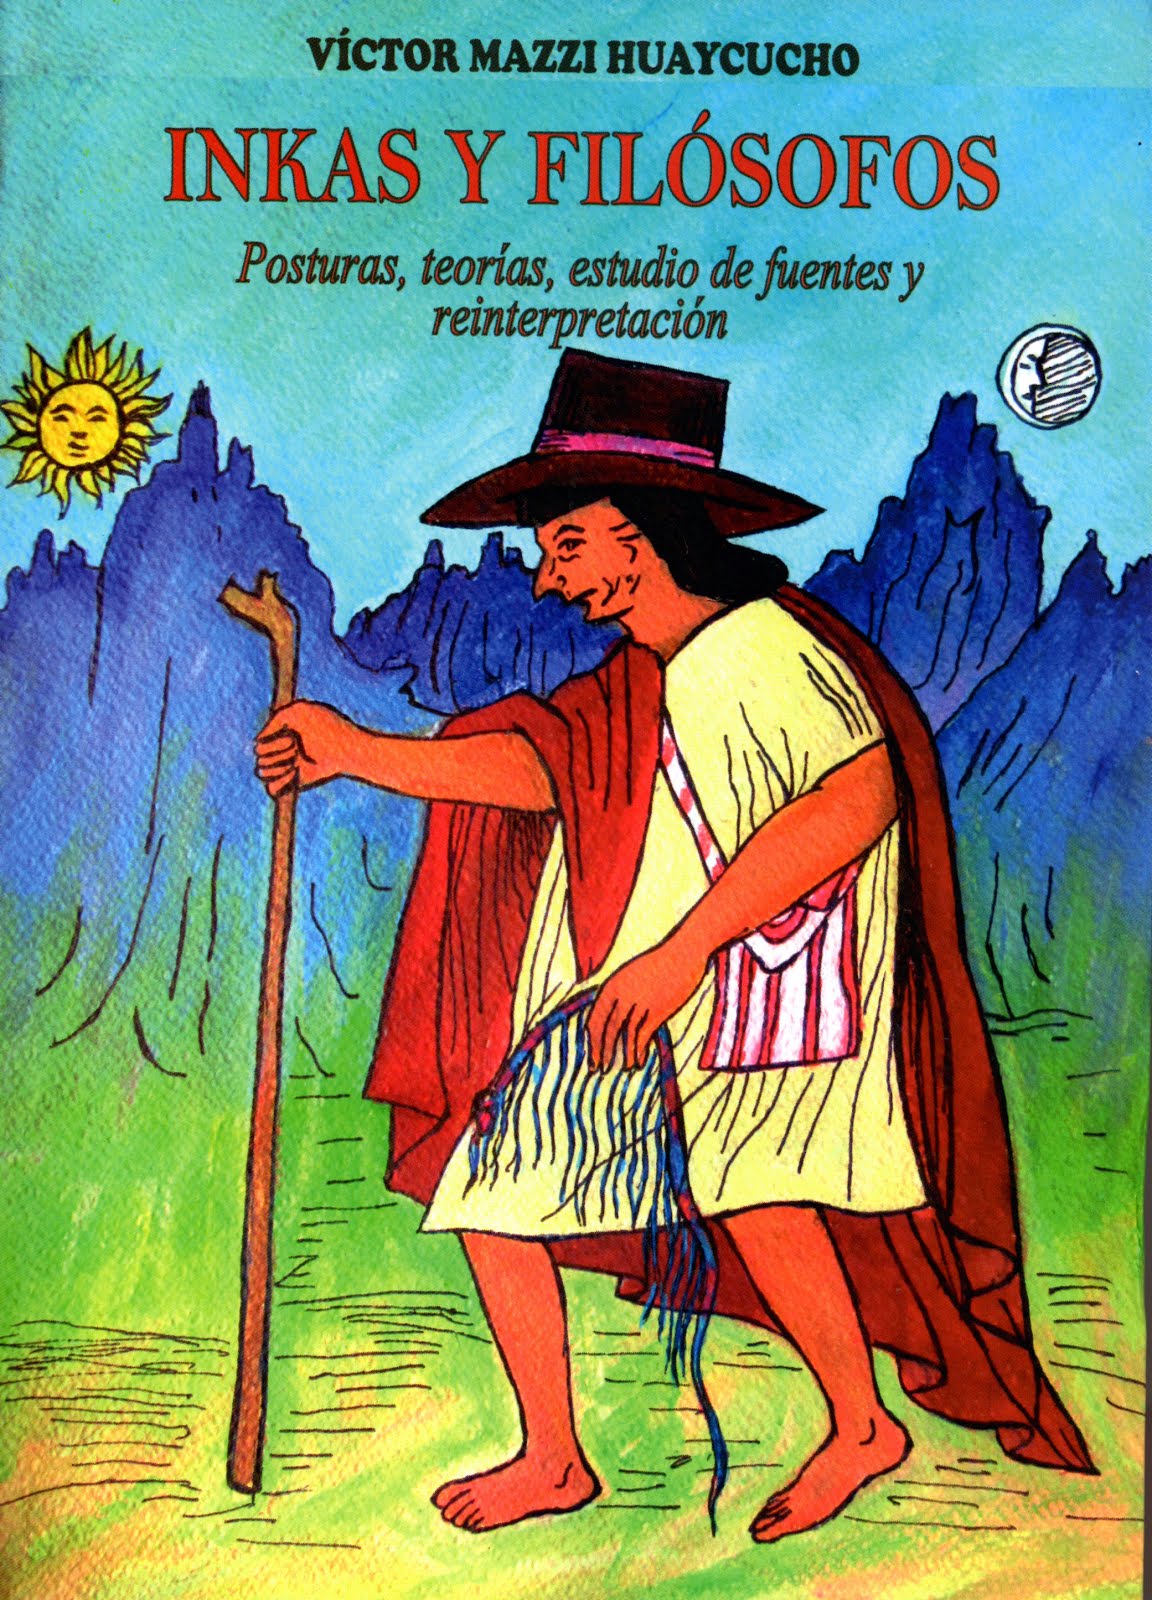 Inkas y filósofos